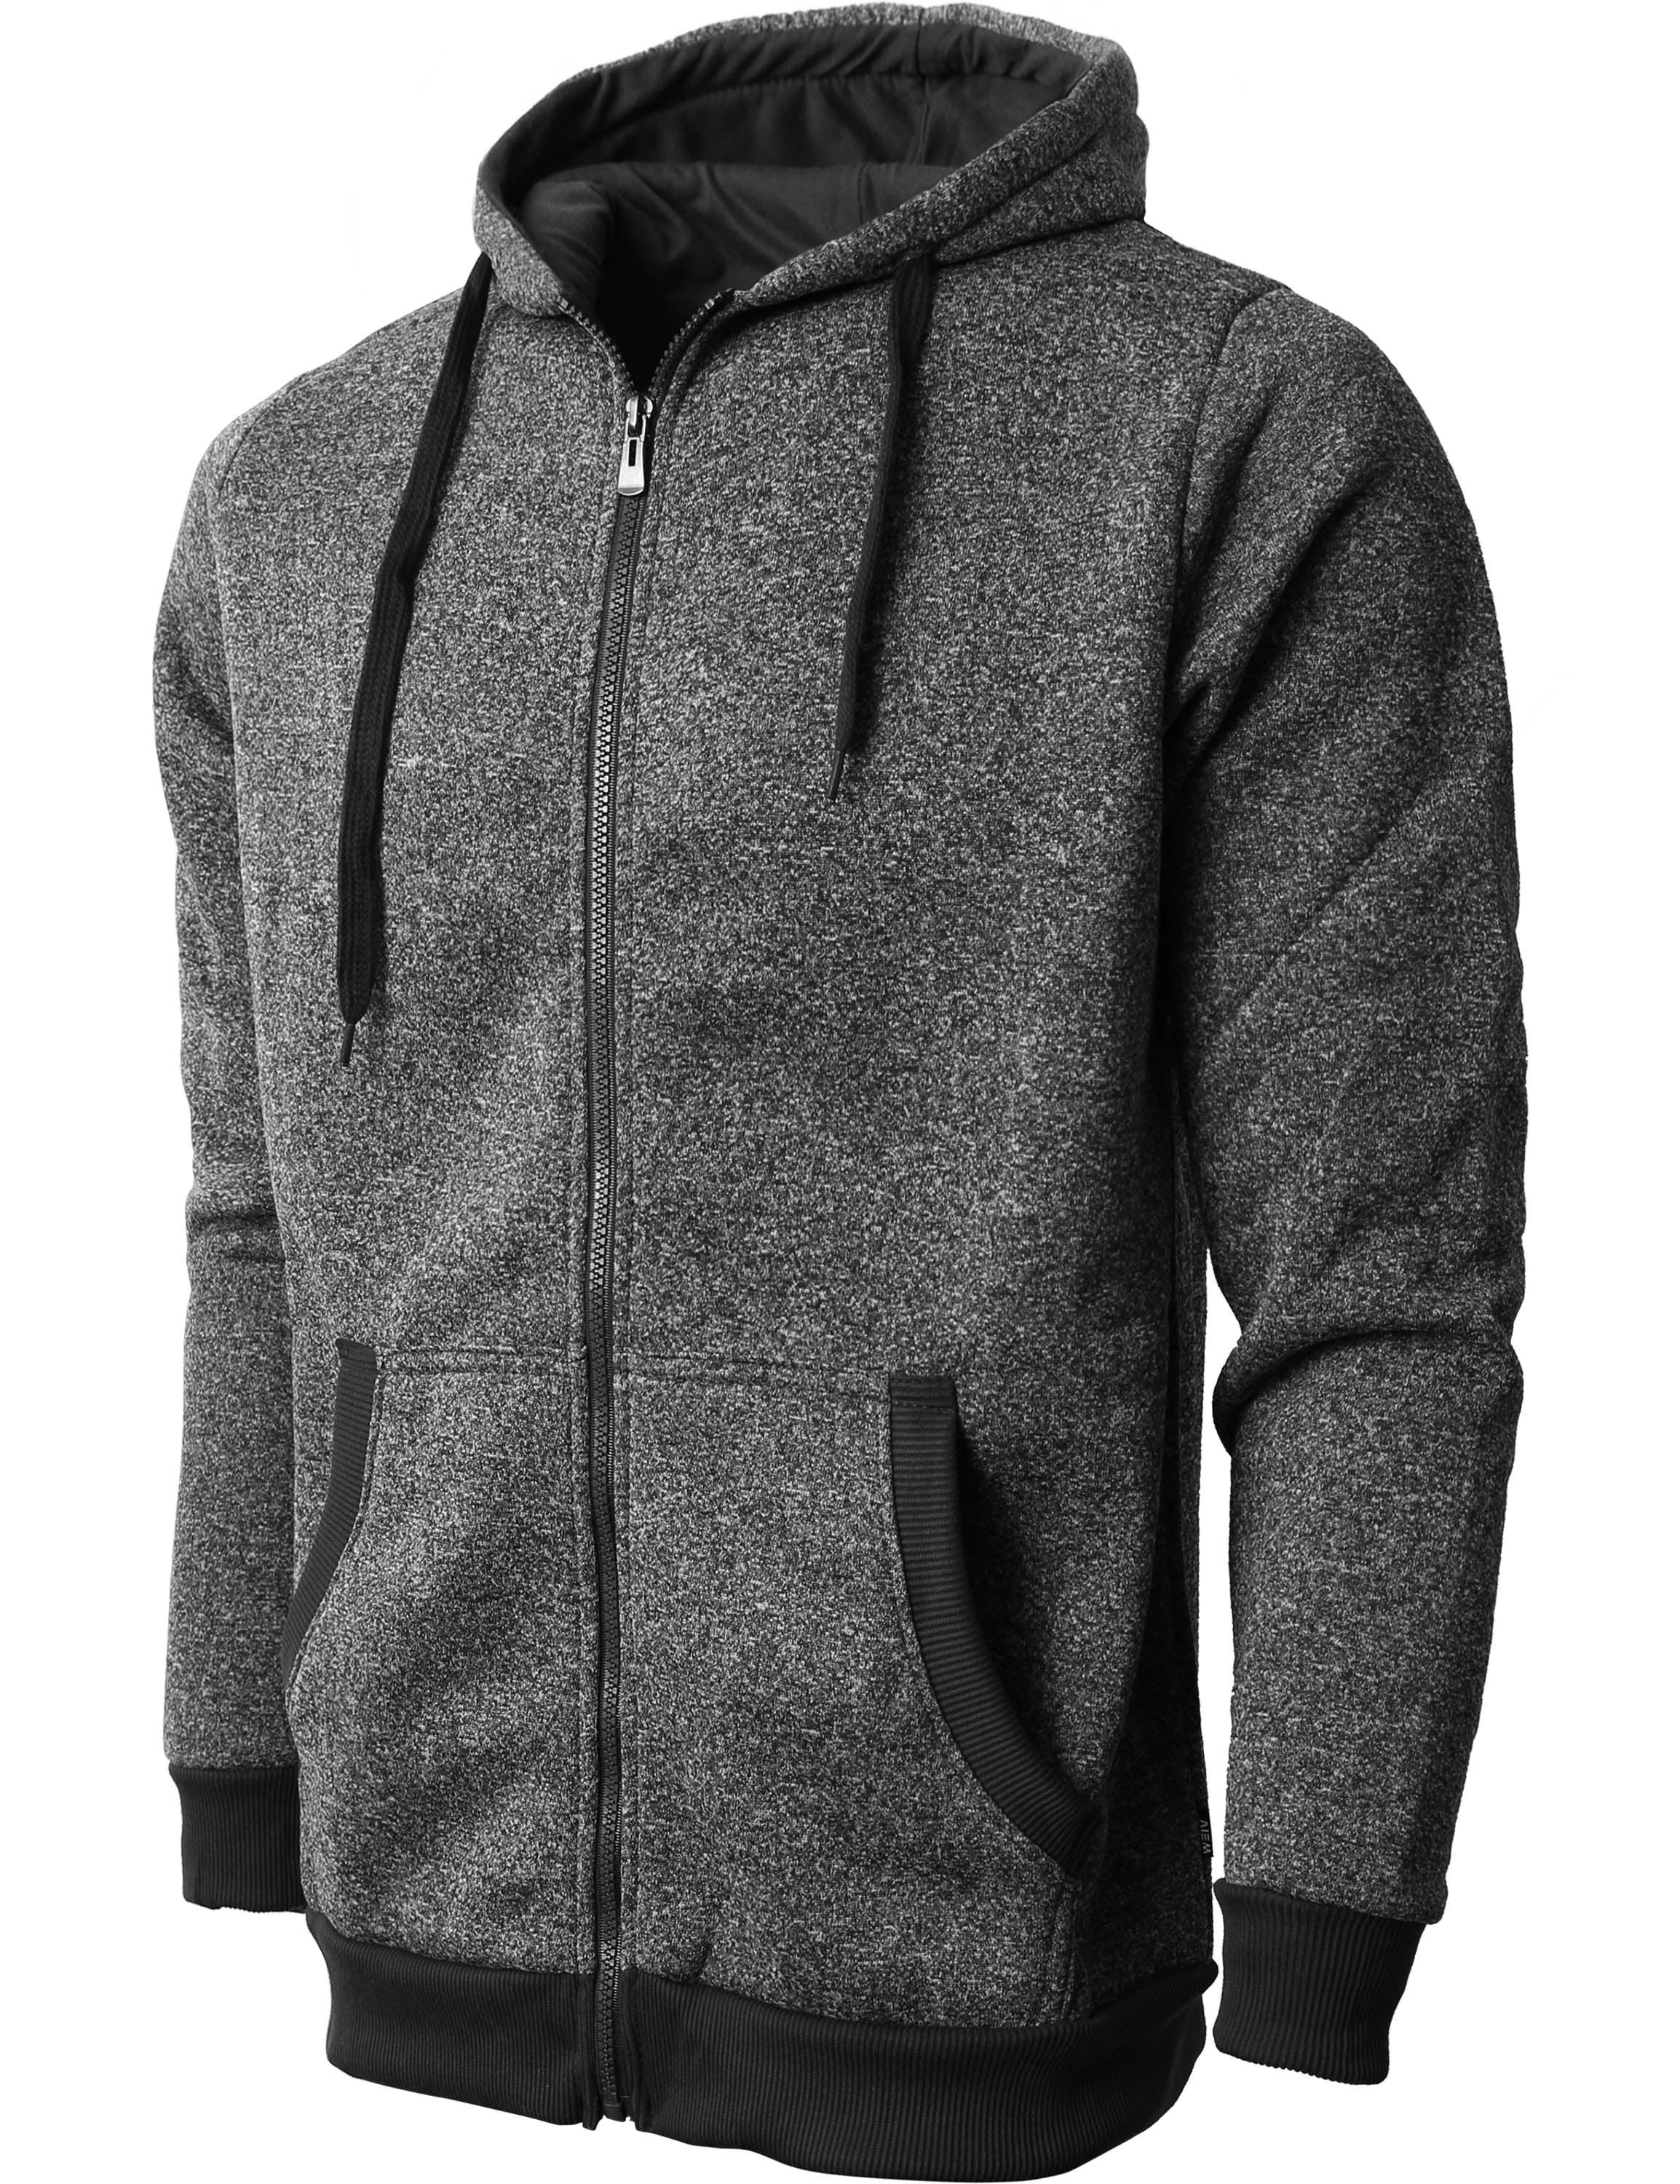 JAMZER Hot Sale Winter Mens Gadient Color Hoodies Casual Pullover Full Zip Hood Sweatshirt Slim Fit Lightweight Coat